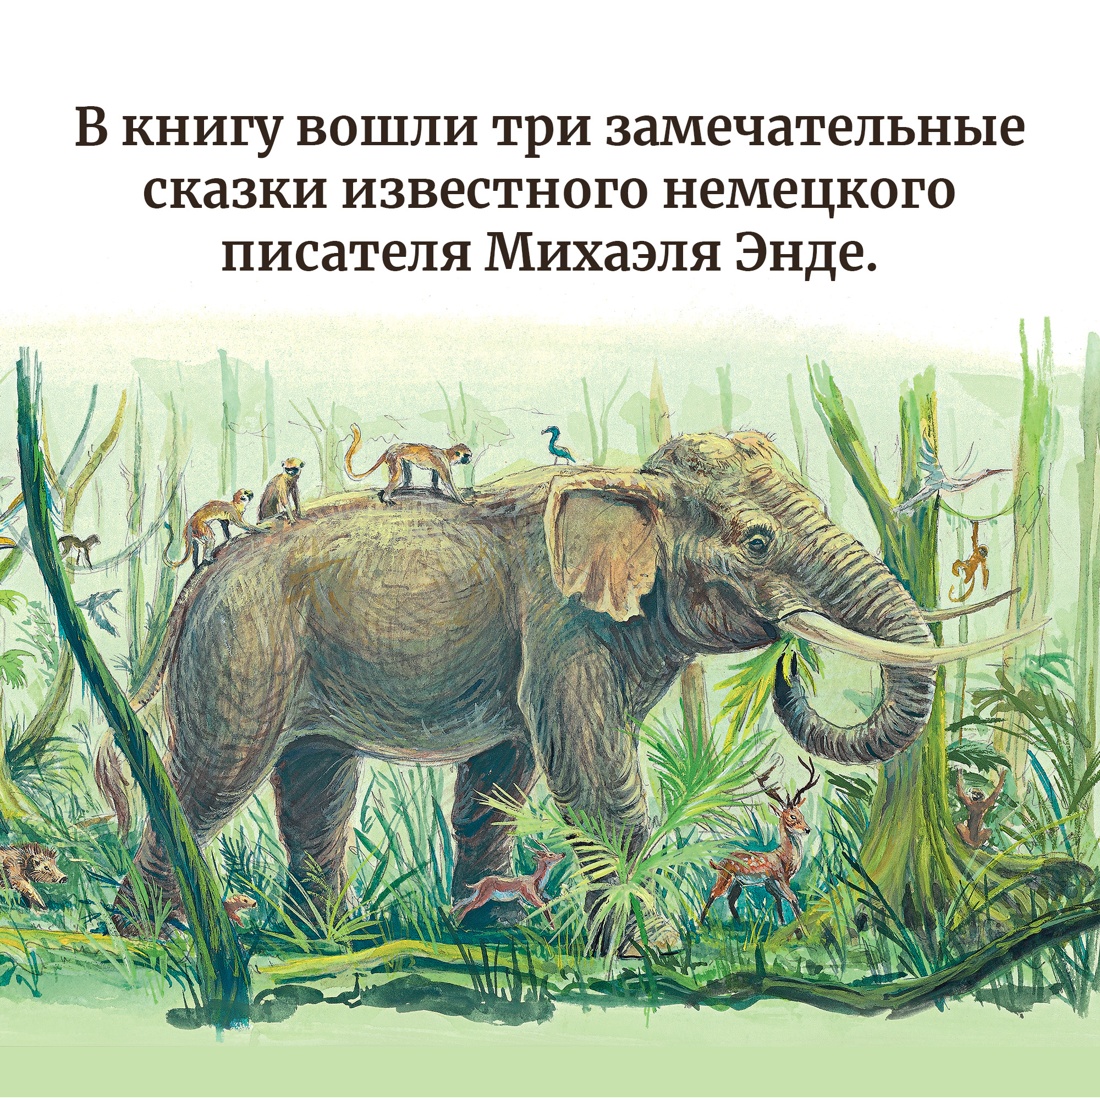 Промо материал к книге "Самые красивые сказки о животных" №2